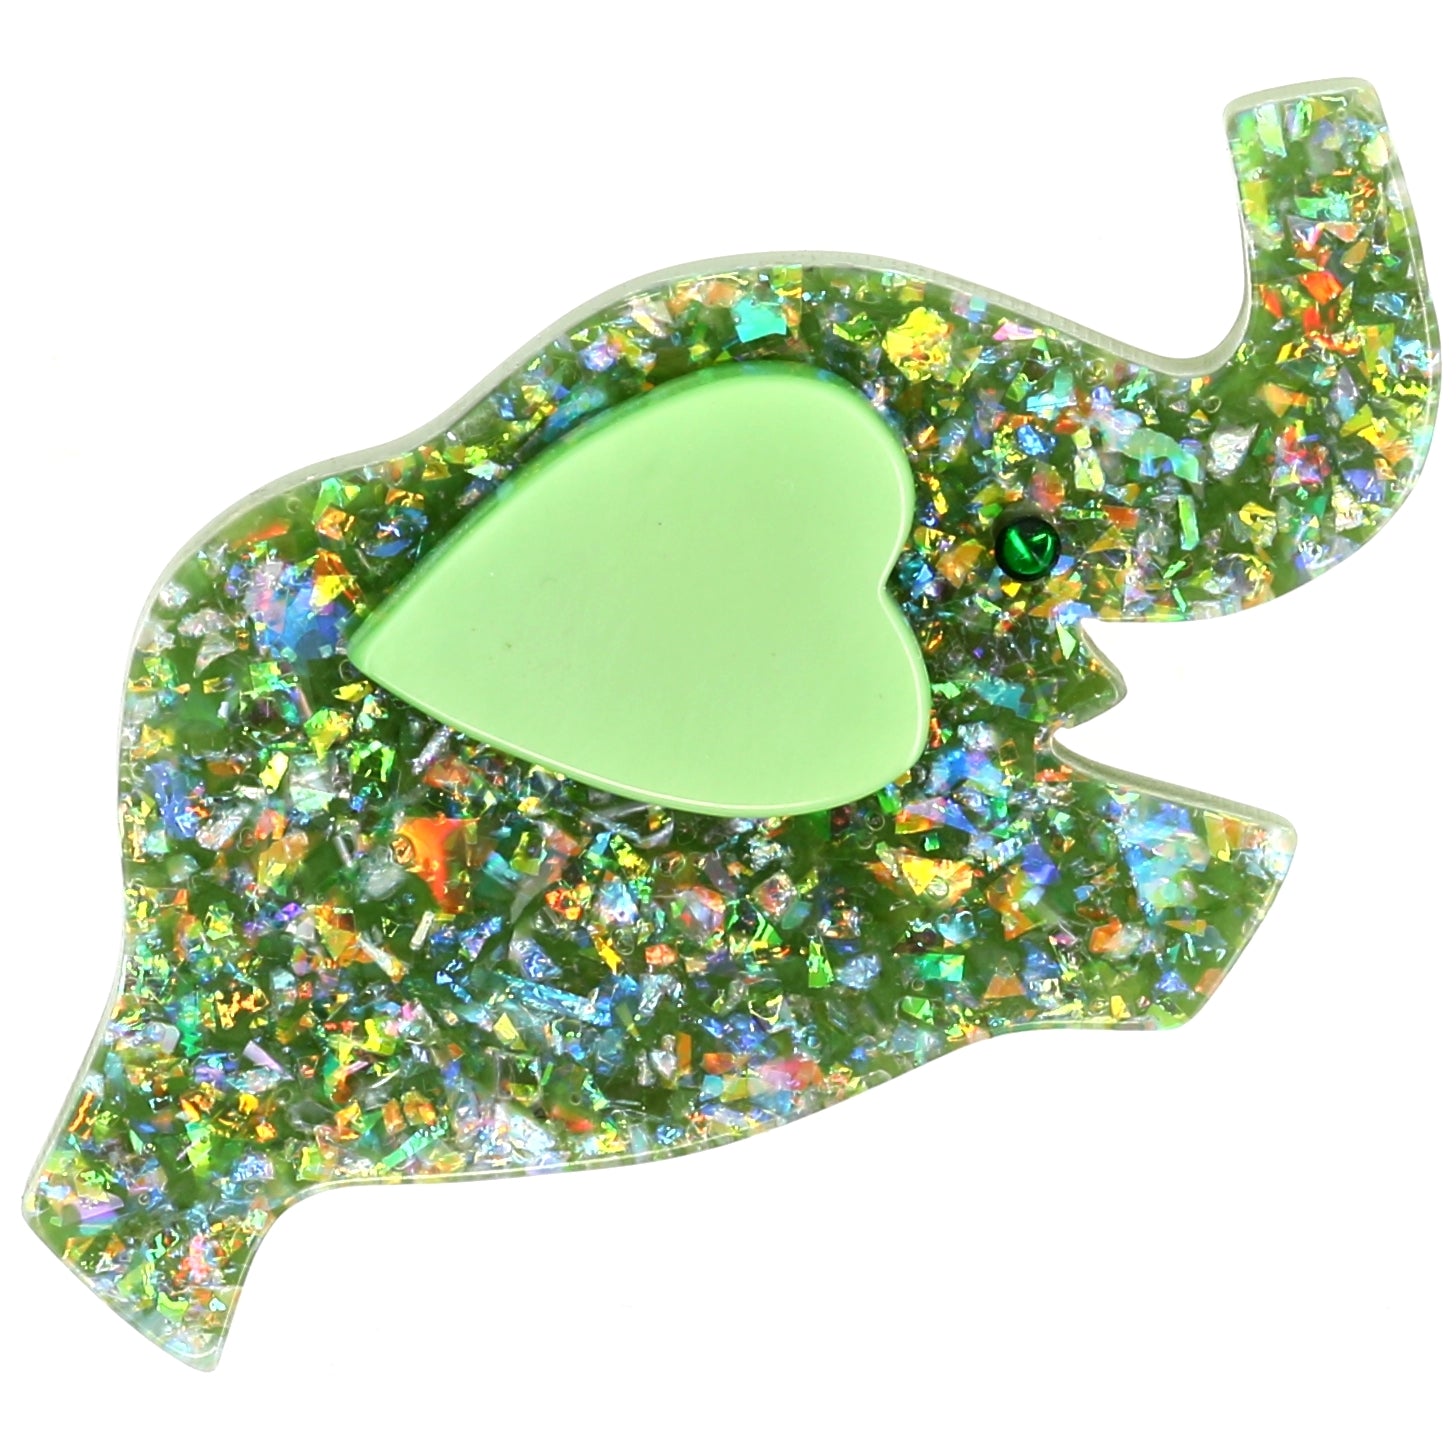 Glittering Almond green Elephant Heart  Brooch  with a light green ear